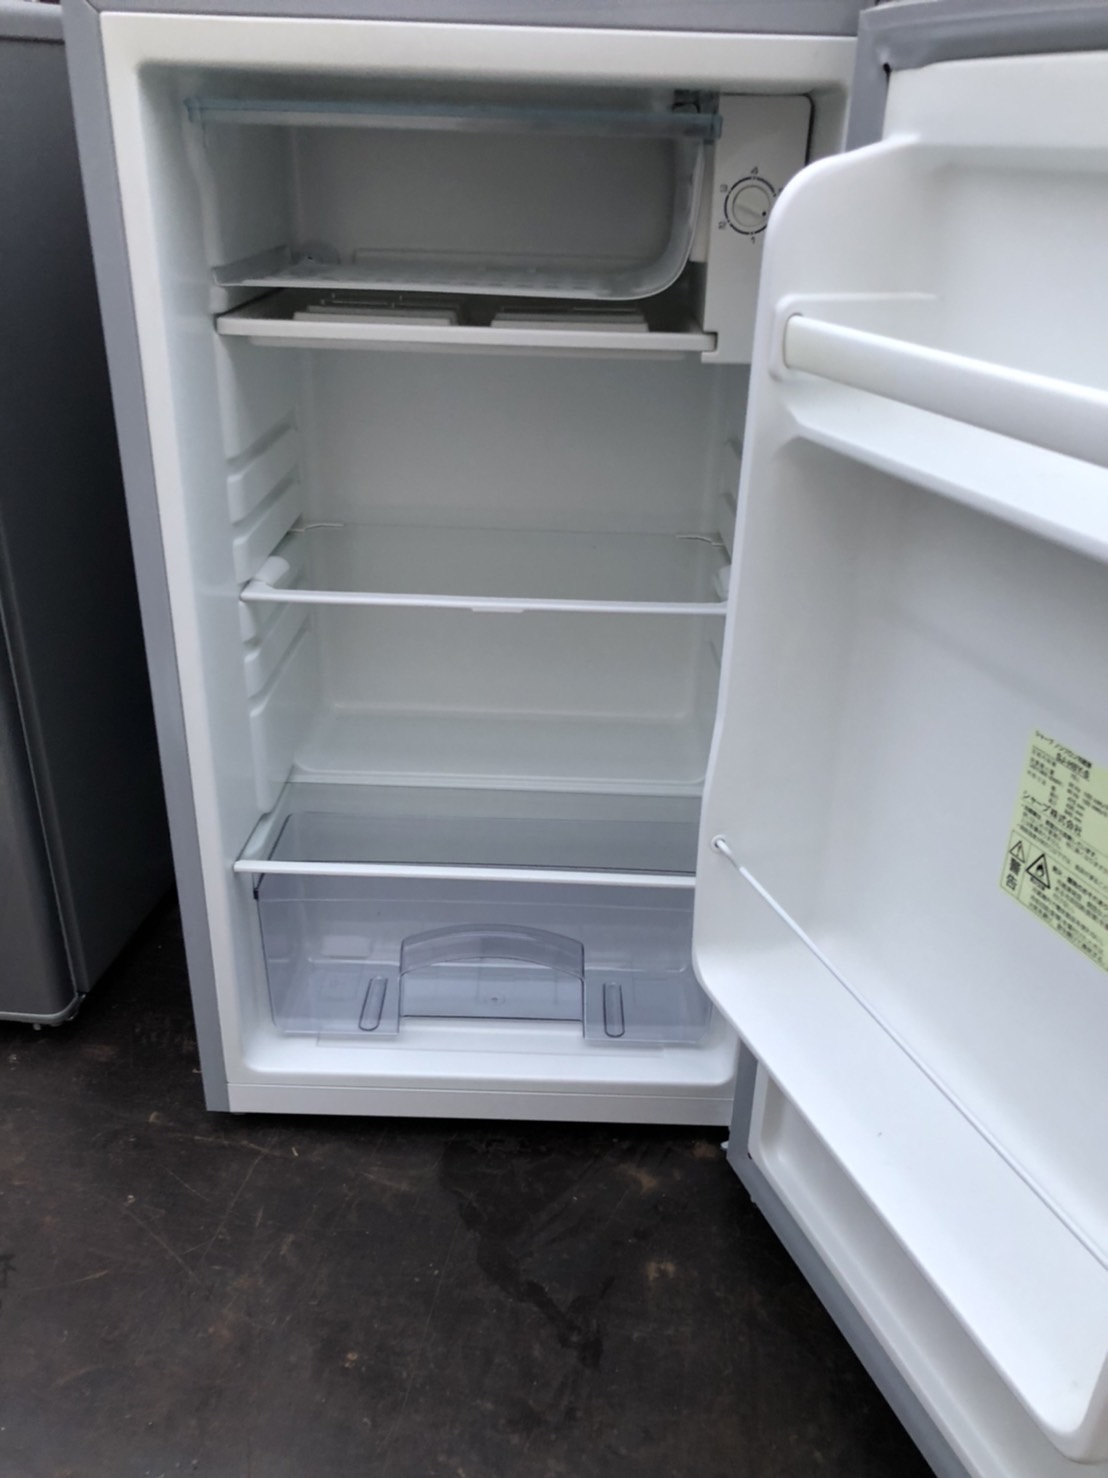 refrigerator-Waste-Clean up